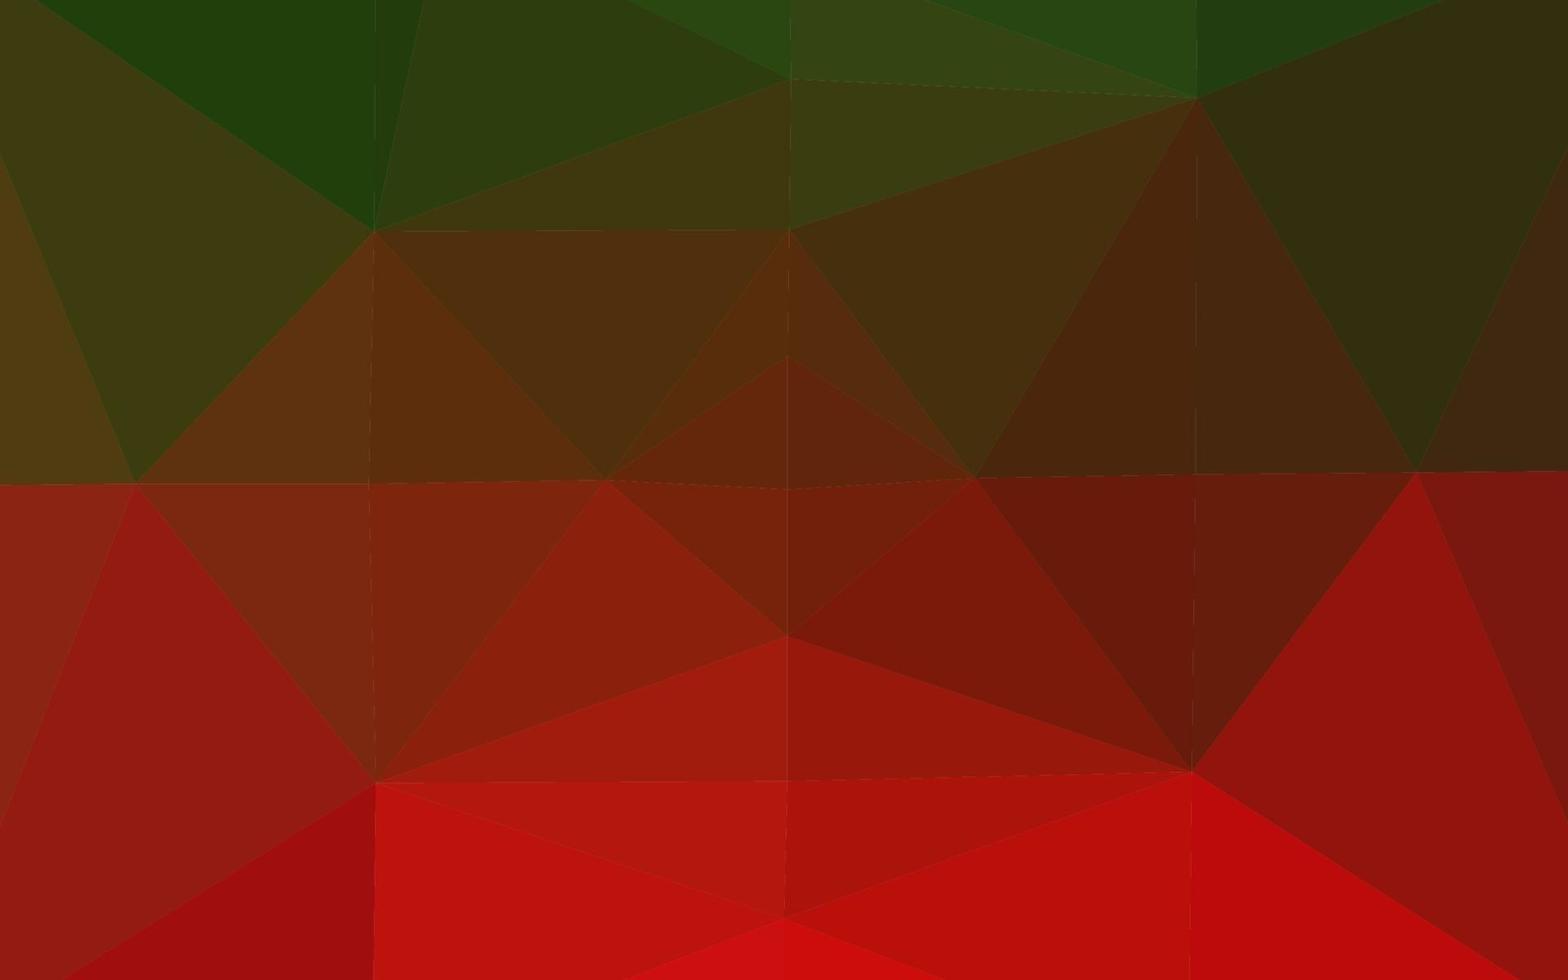 sfondo astratto mosaico vettoriale verde chiaro, rosso.